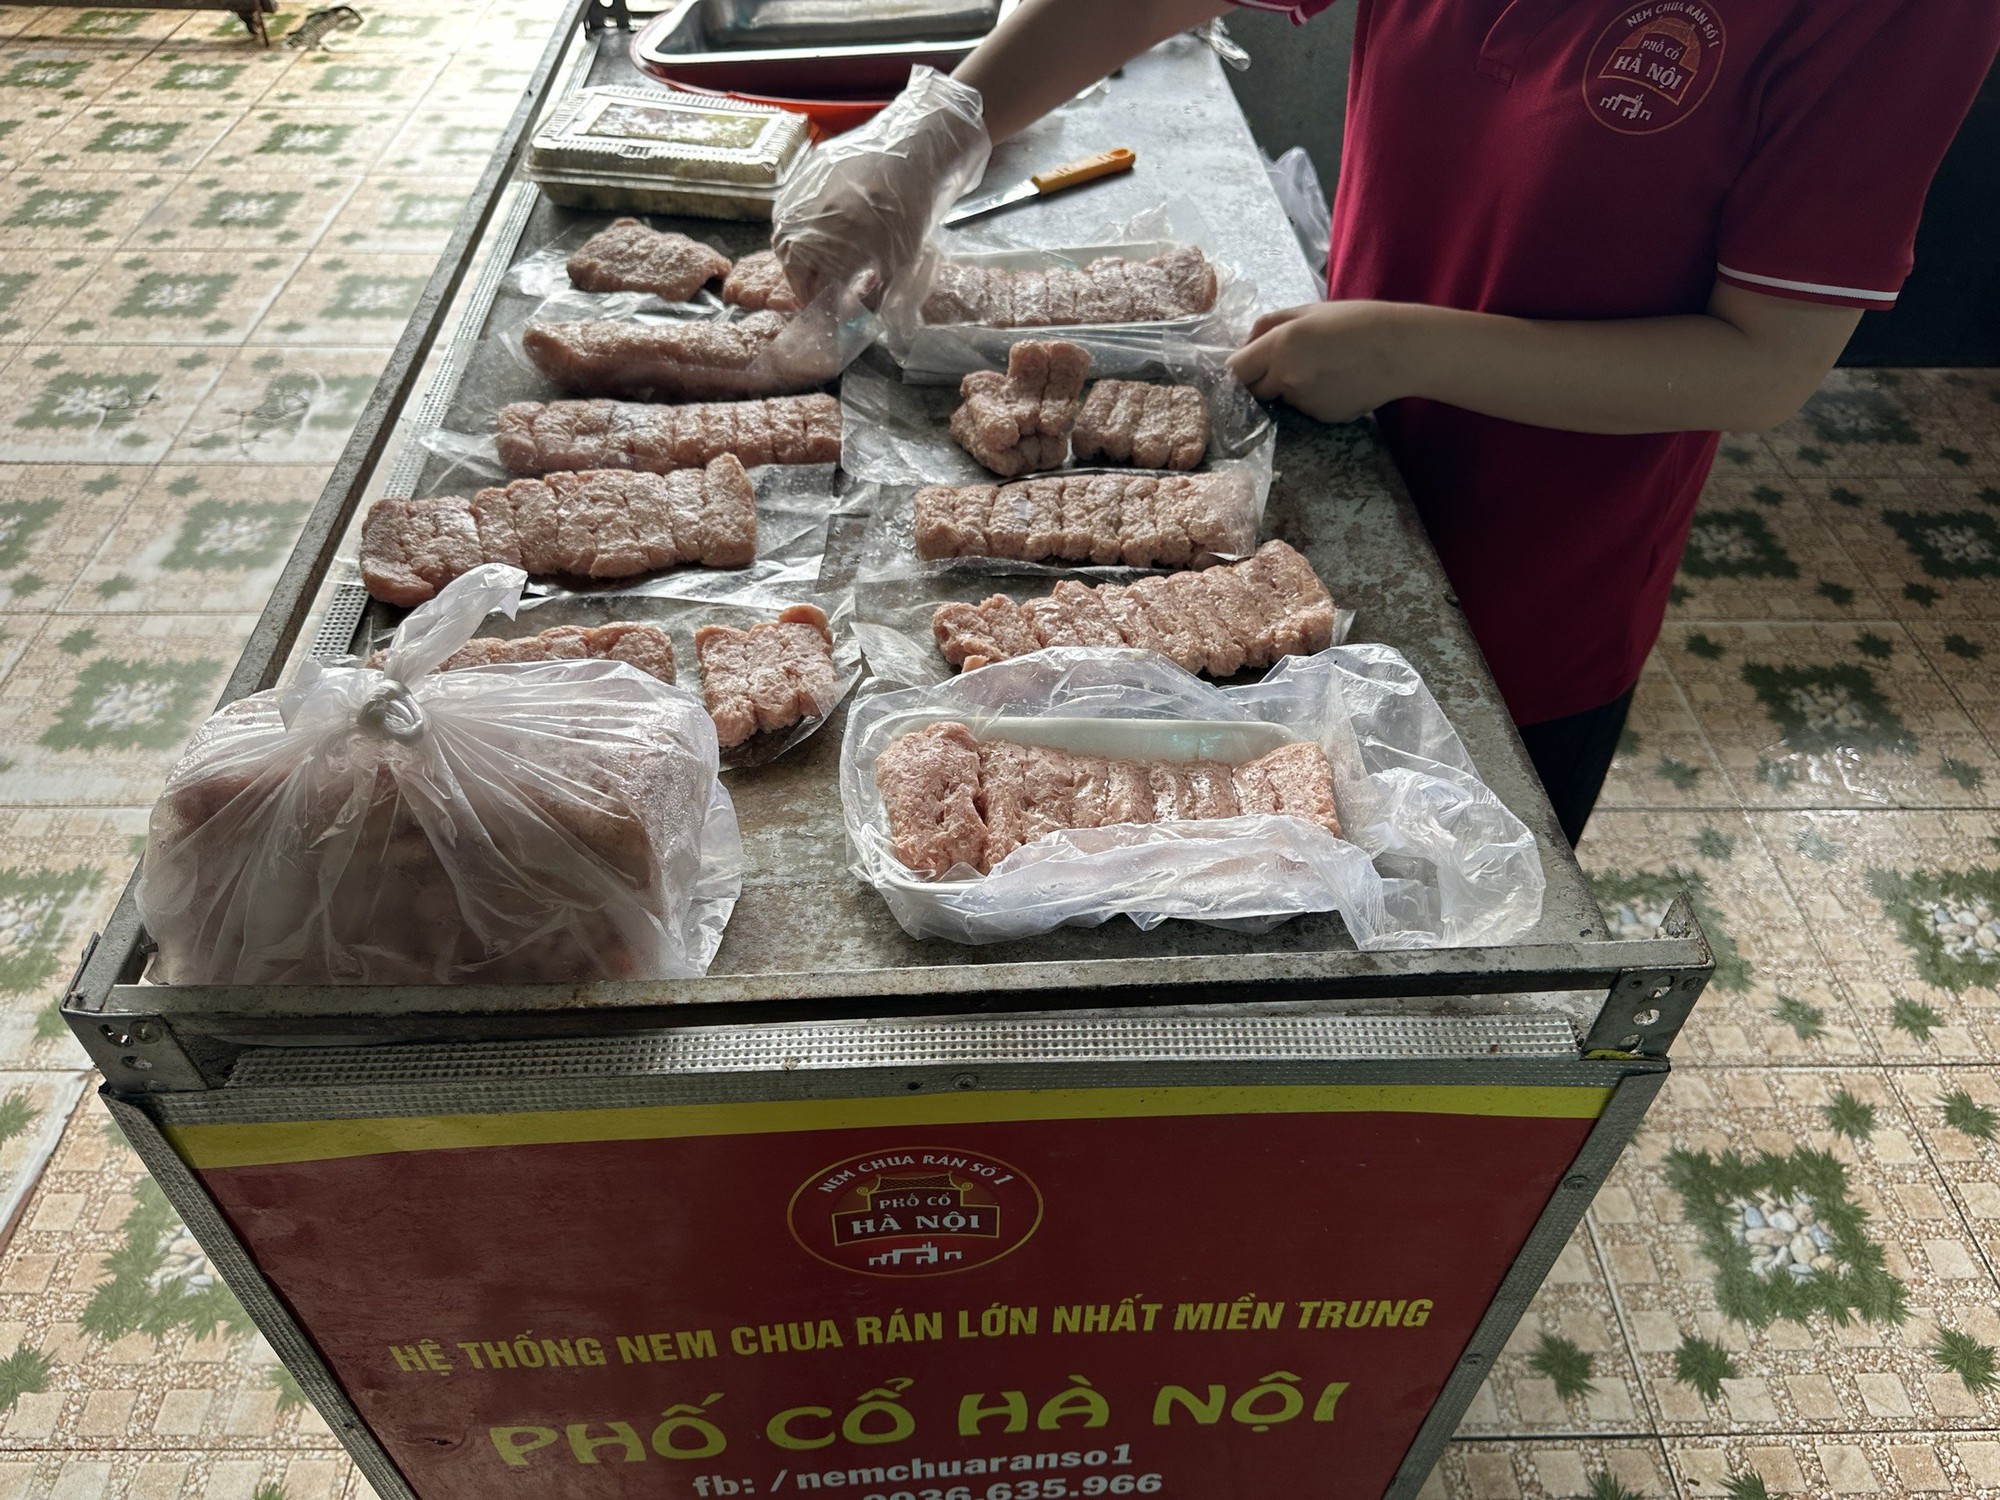 Cơ sở kinh doanh Phố Food đăng ký ngành nghề kinh doanh mua bán thực phẩm, nhưng cơ sở lại hoạt động chế biến thực phẩm nem chua chiên, cánh gà chiên.